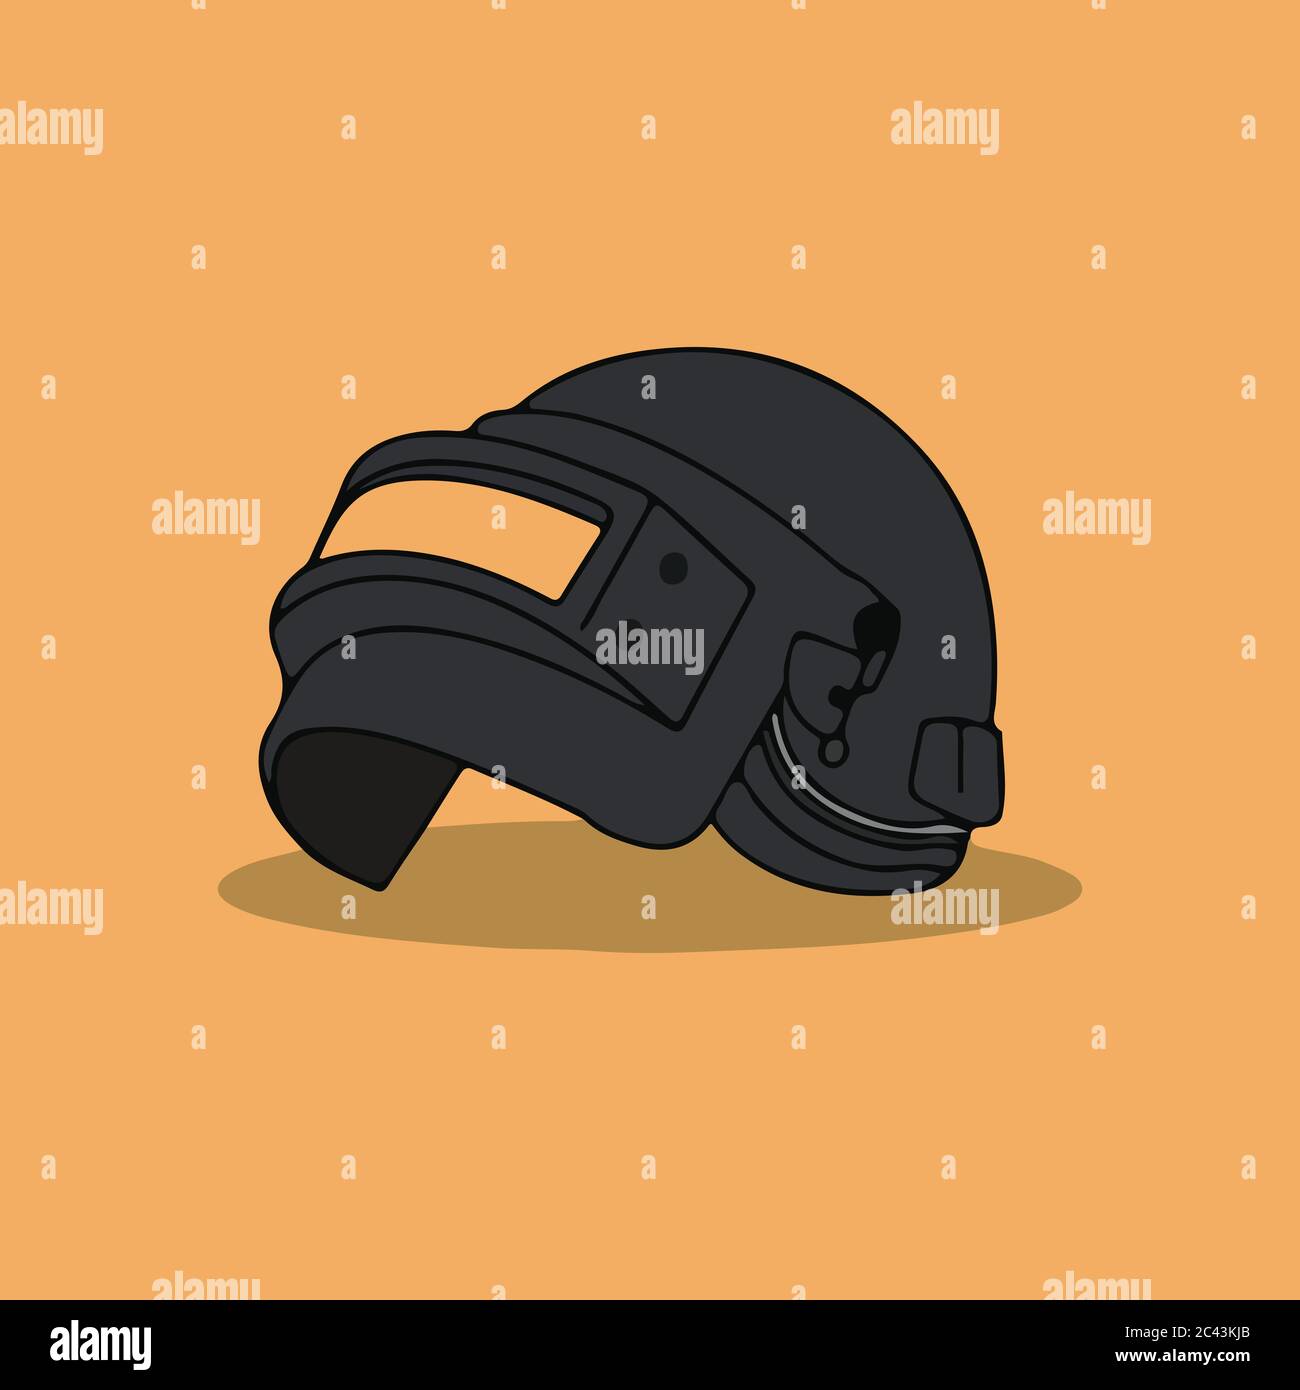 ilustración vectorial del casco de juego de pubg Imagen Vector de stock -  Alamy